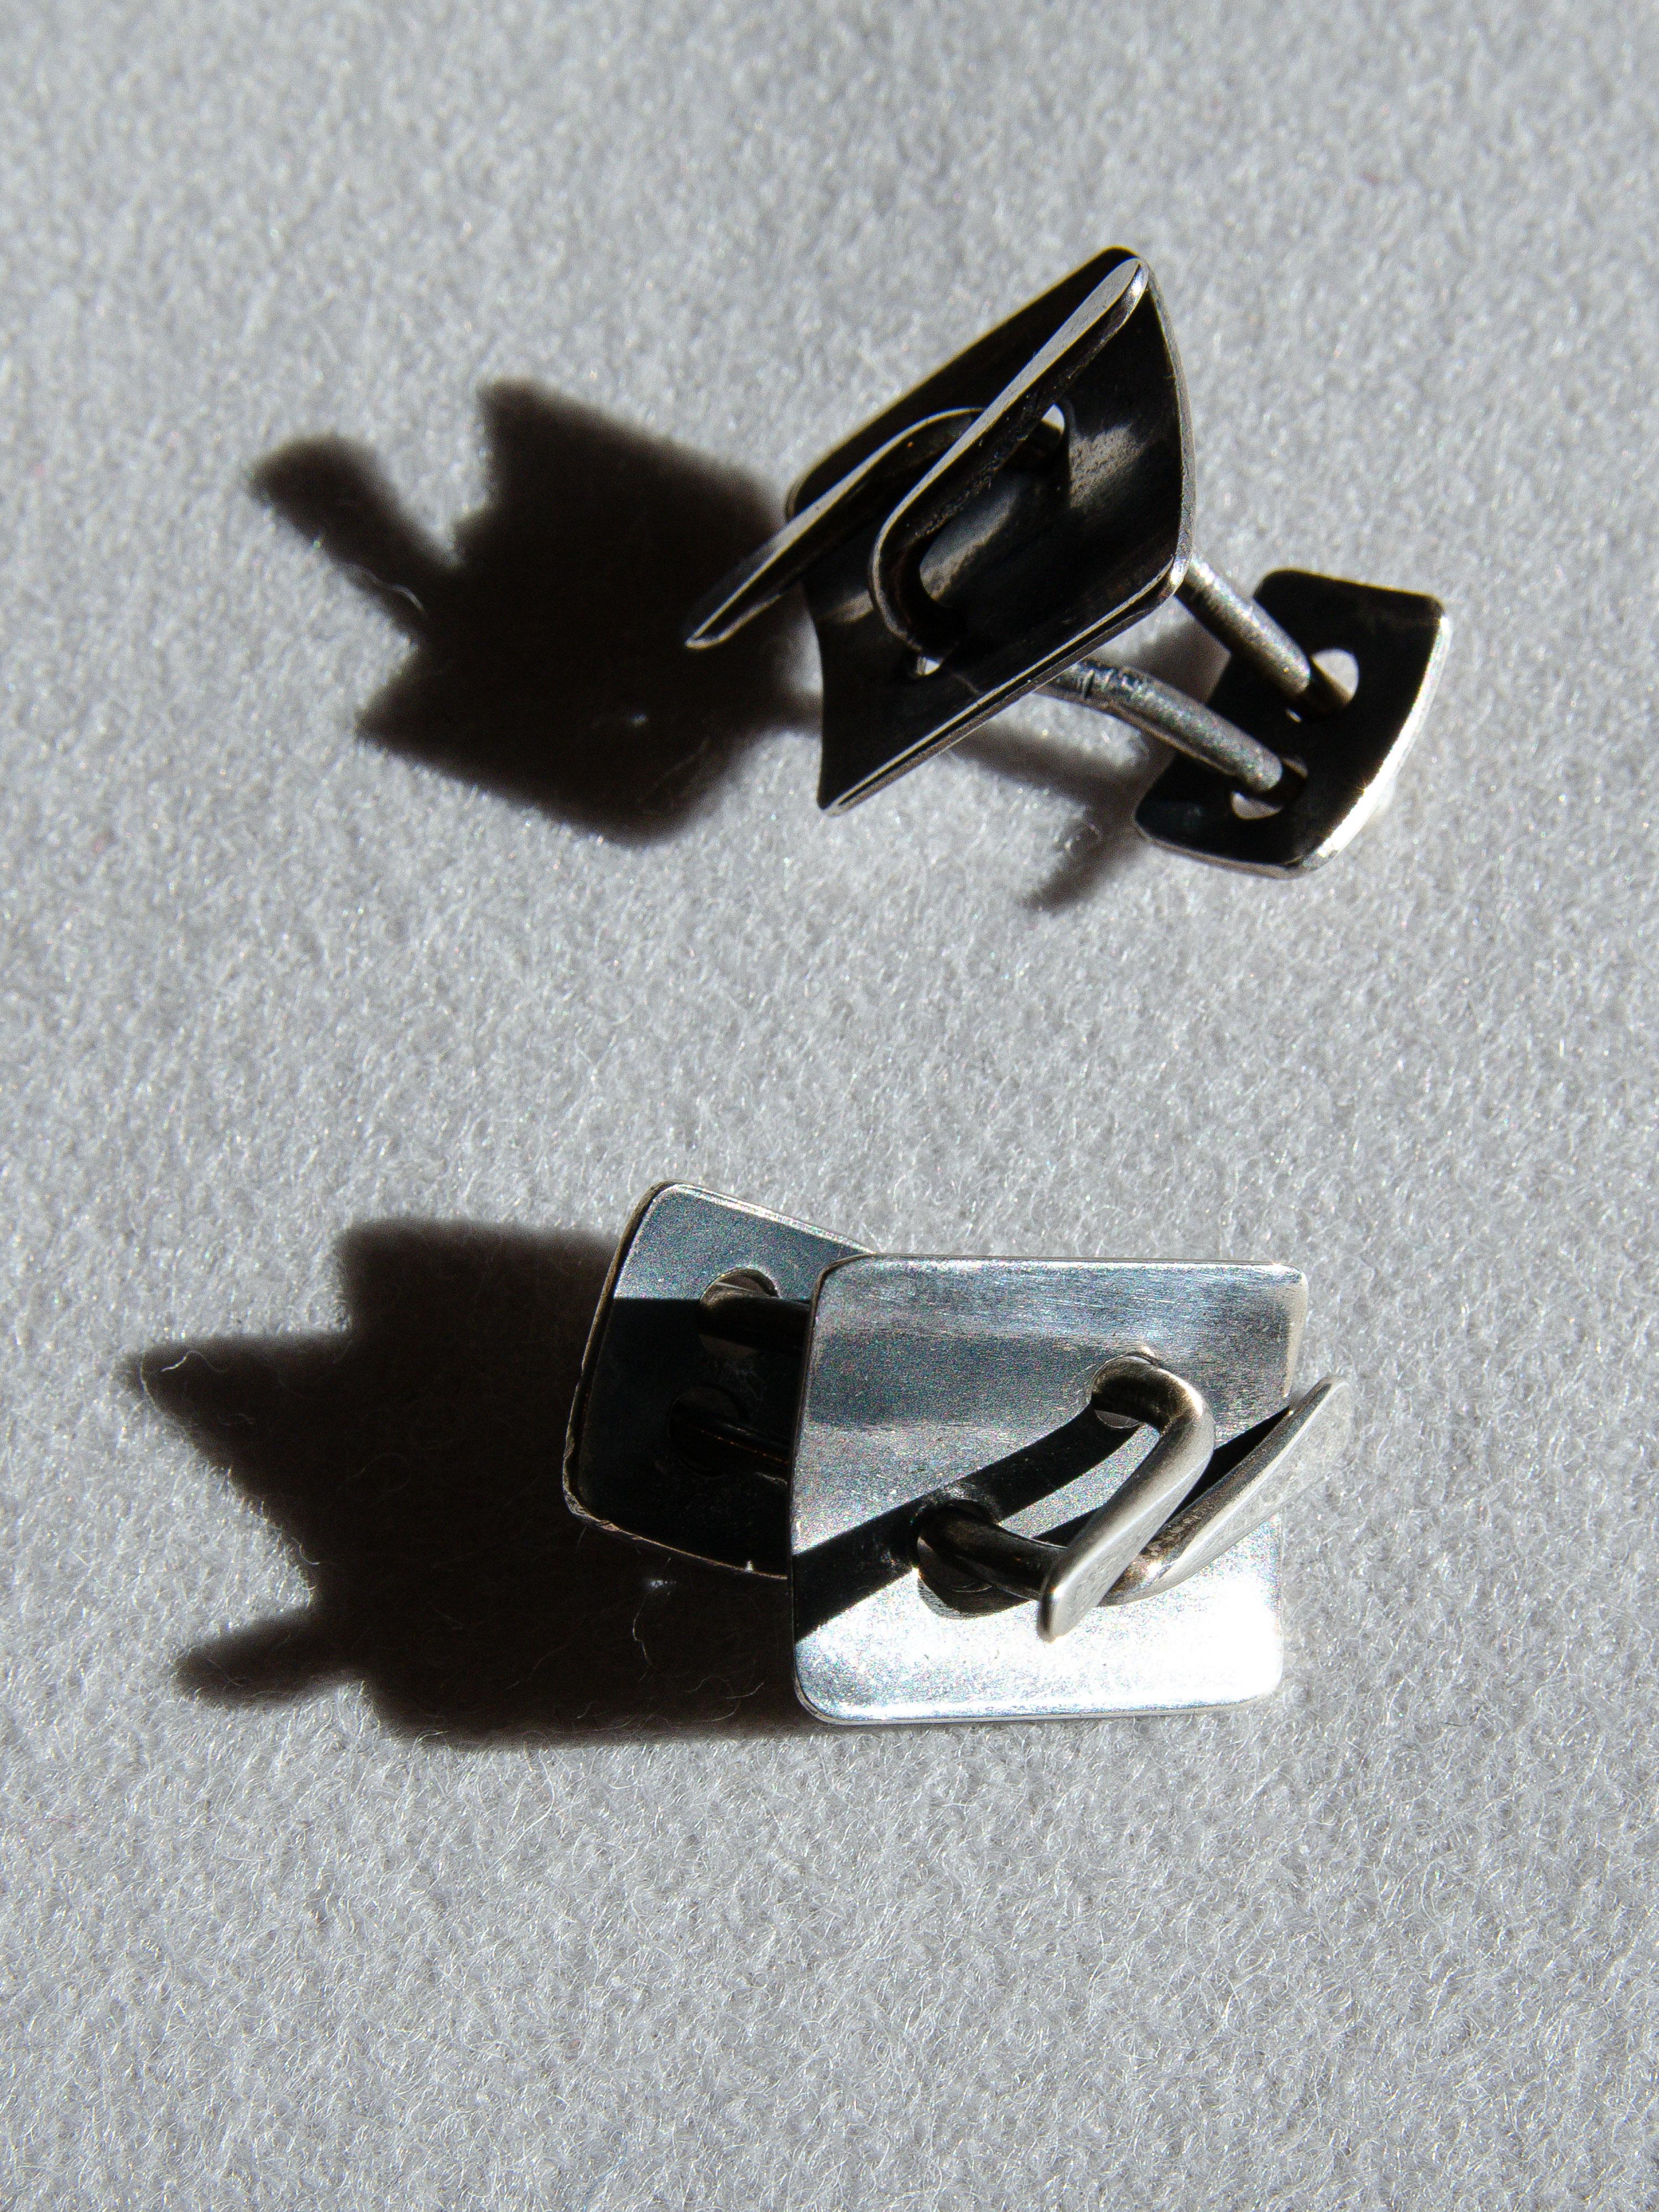 Rare paire de boutons de manchette en argent sterling conçus par le bijoutier moderniste de Greenwich Village, Art Smith, dans les années 1950. Jewell est considéré comme l'un des maîtres joailliers du mouvement moderniste du milieu du XXe siècle.